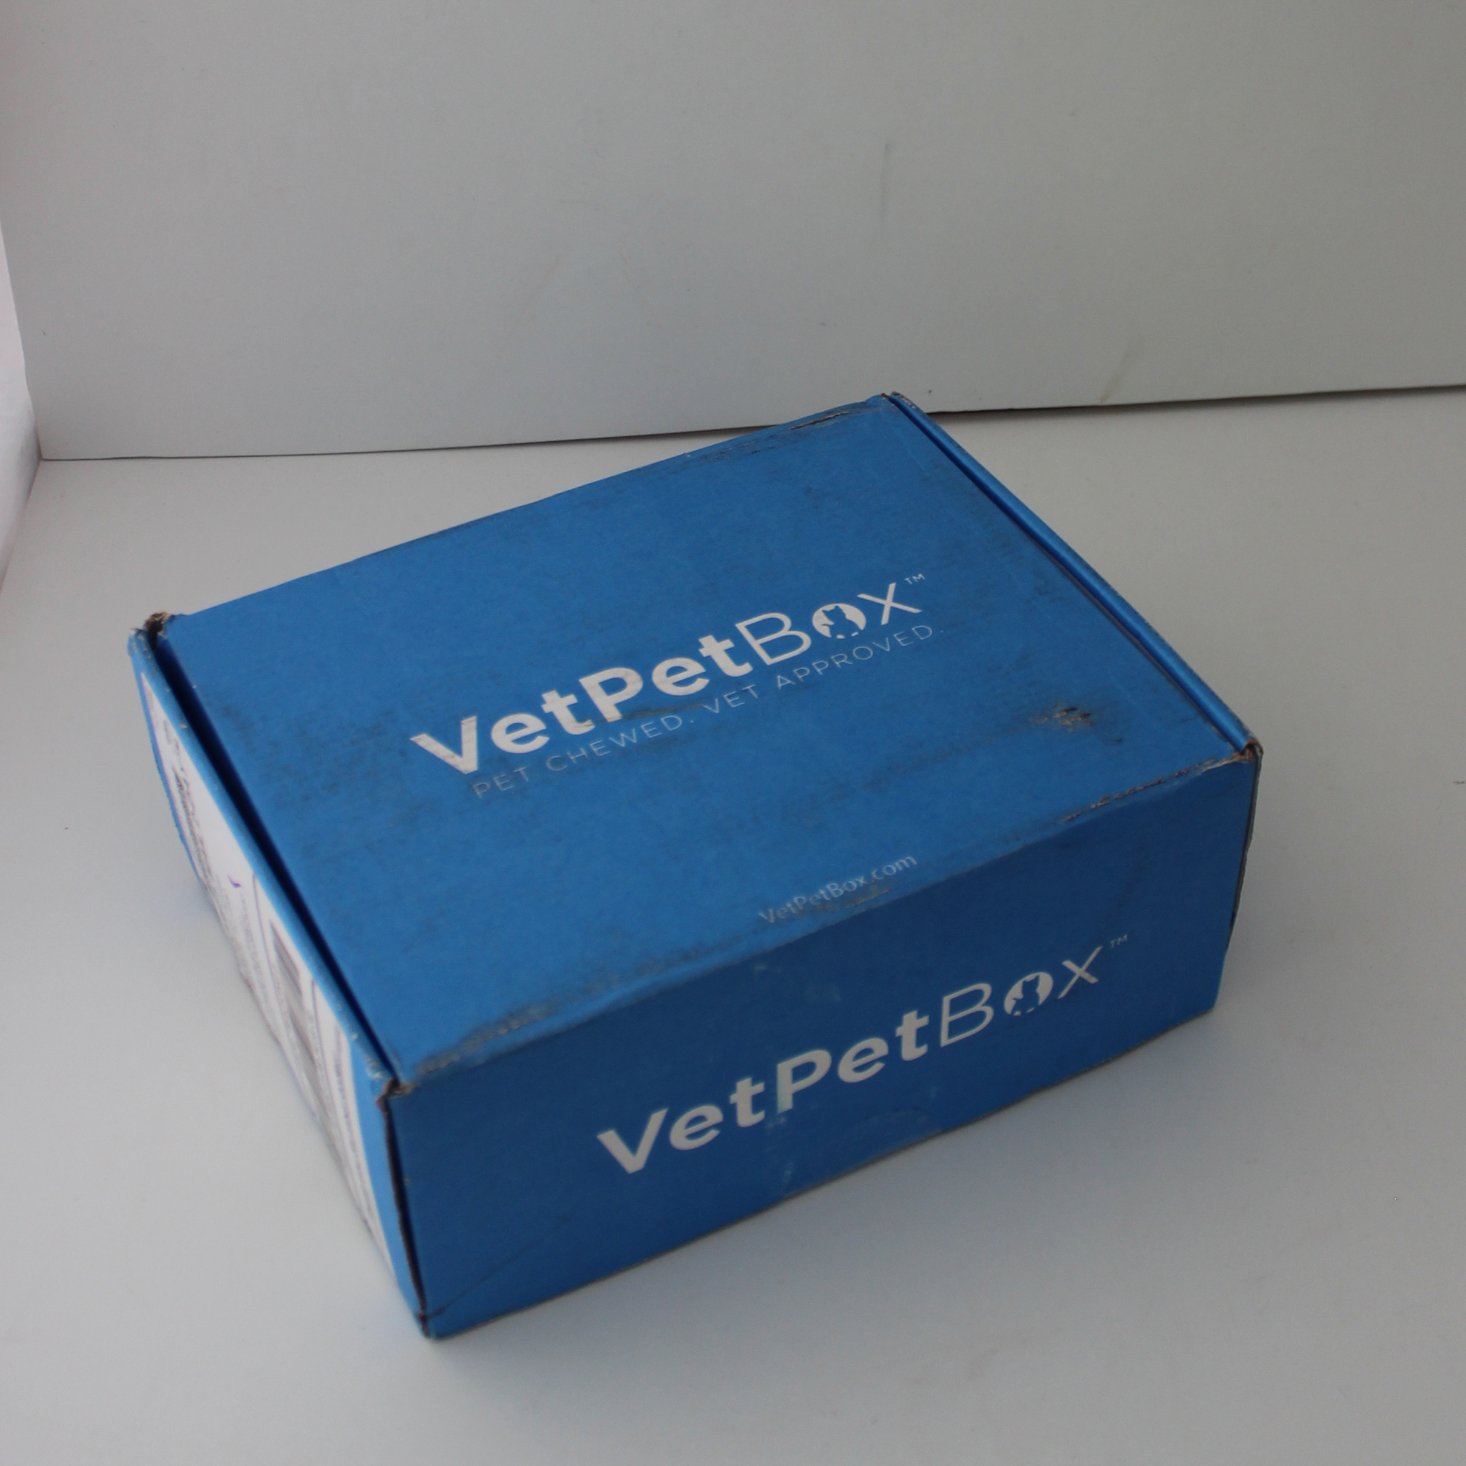 VetPet Box Cat Subscription Review + Coupon –  June 2019